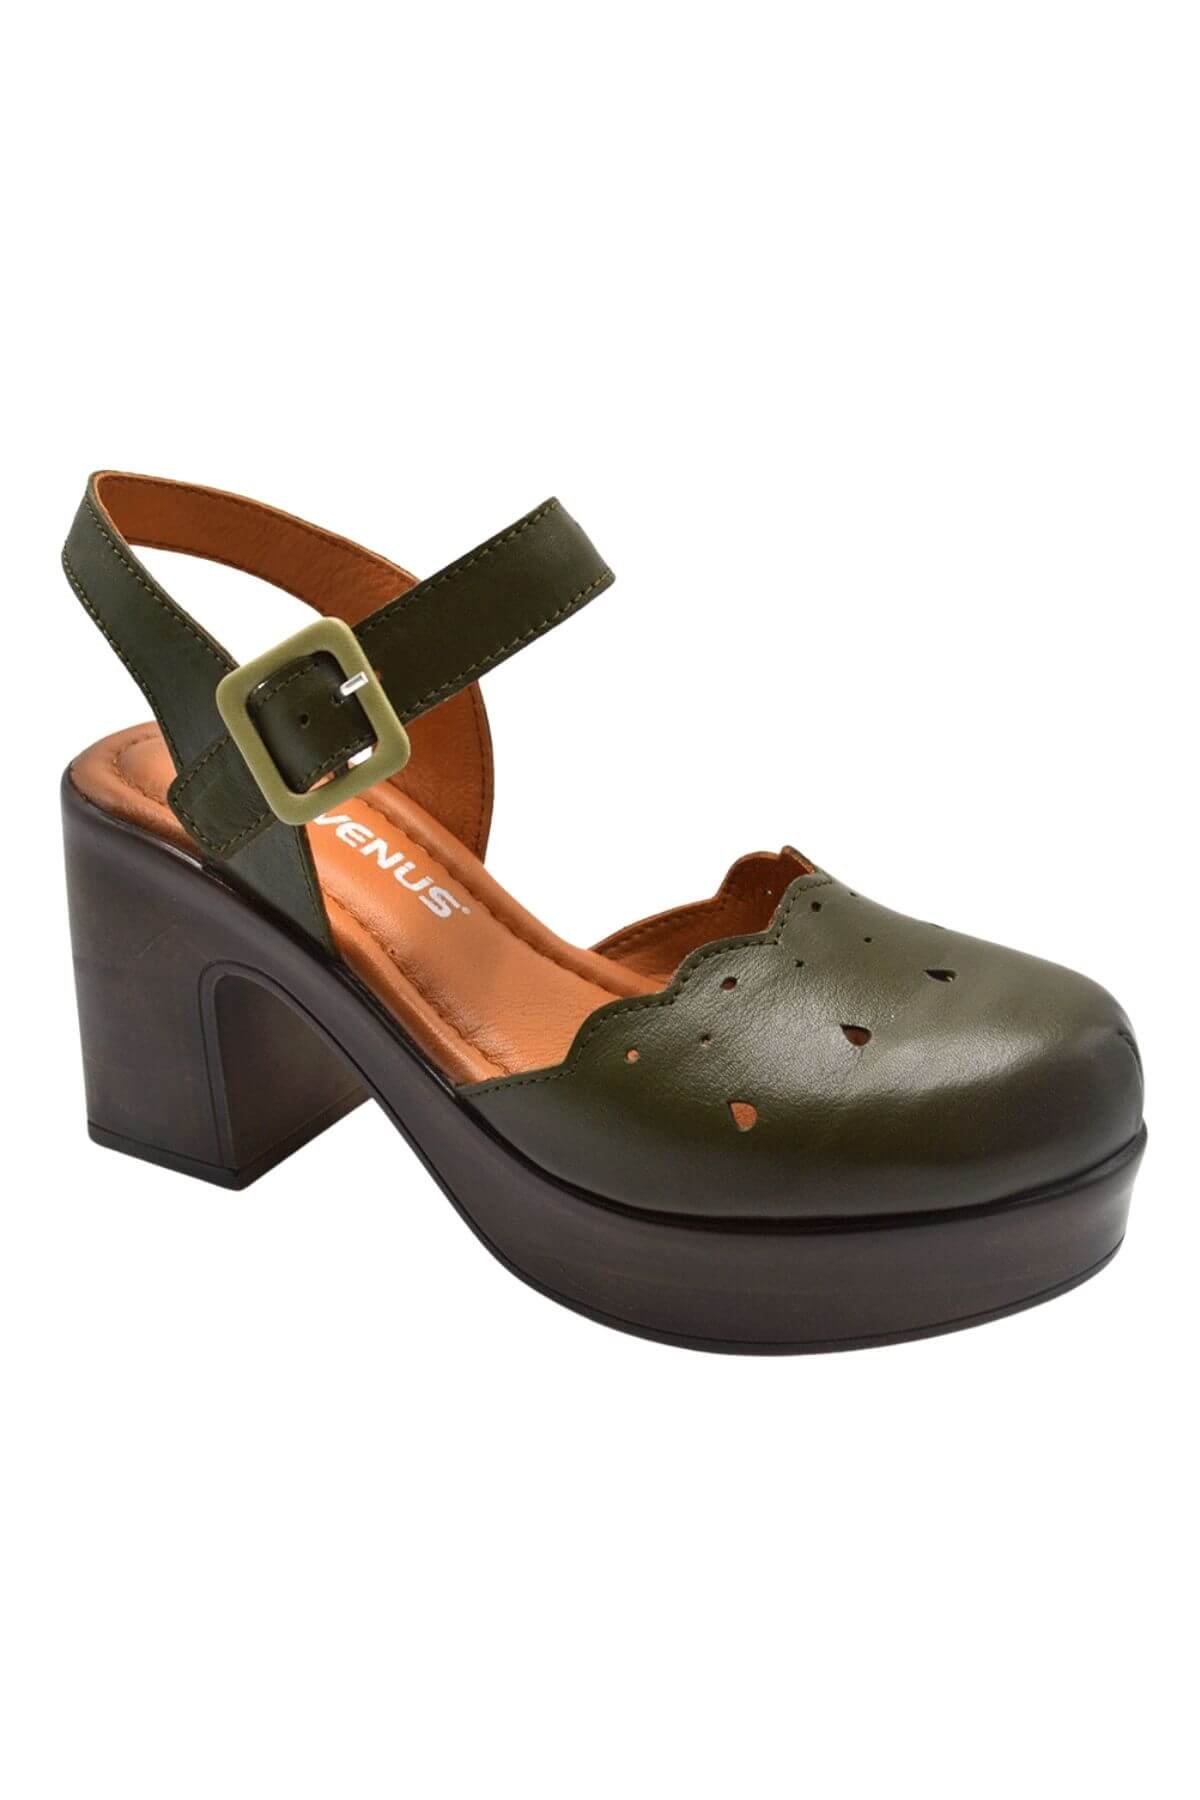 Kadın Apartman Topuk Deri Sandalet S.Yeşil 2217001Y - Thumbnail